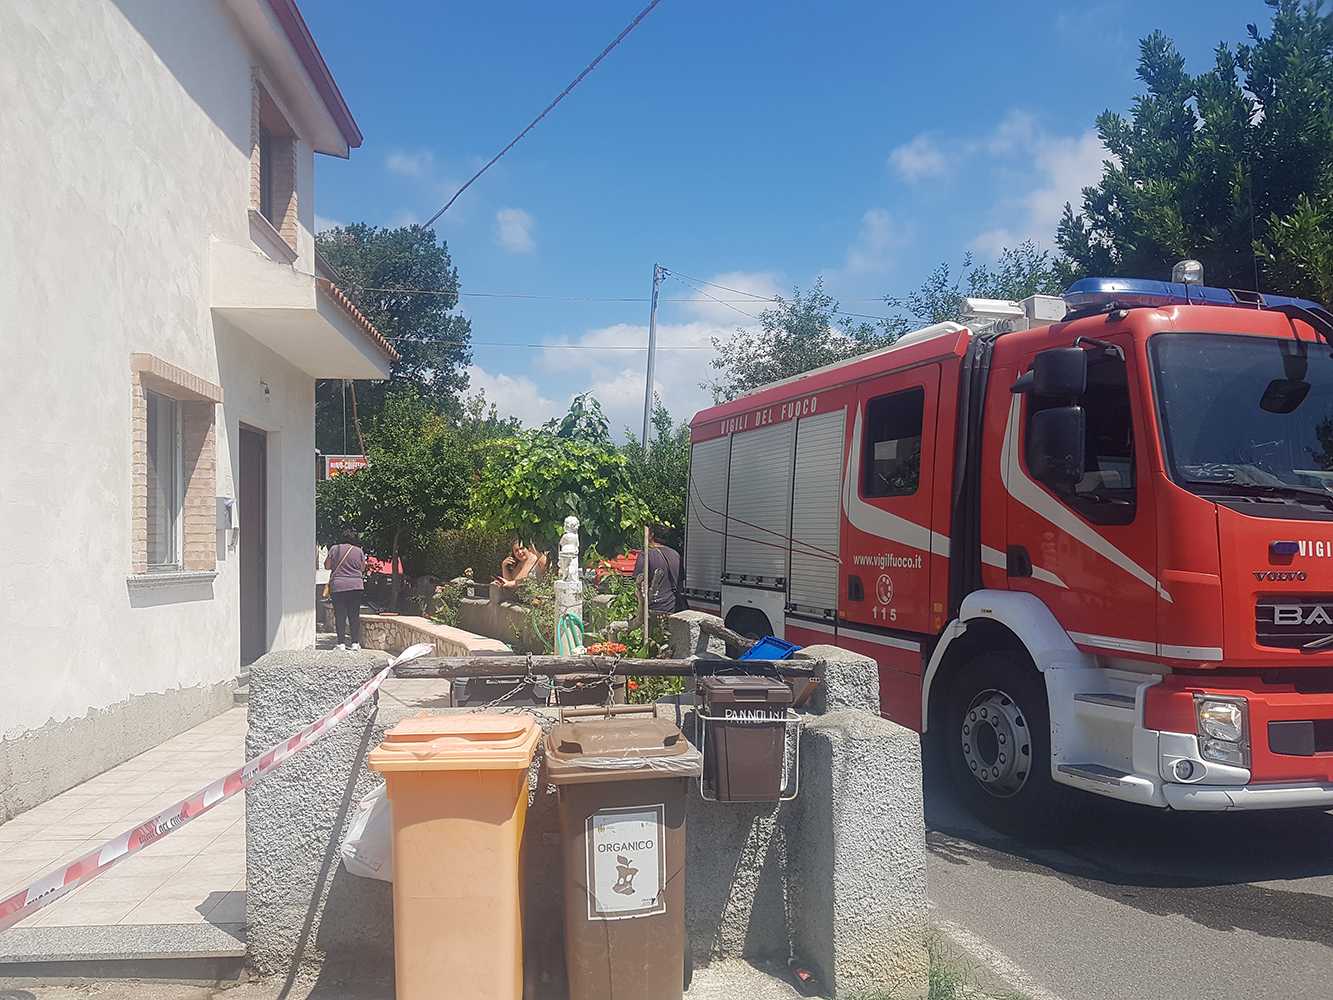 Esplode bombola Gas in casa, strage sfiorata a Catanzaro “quartiere Santo Janni ”Foto"